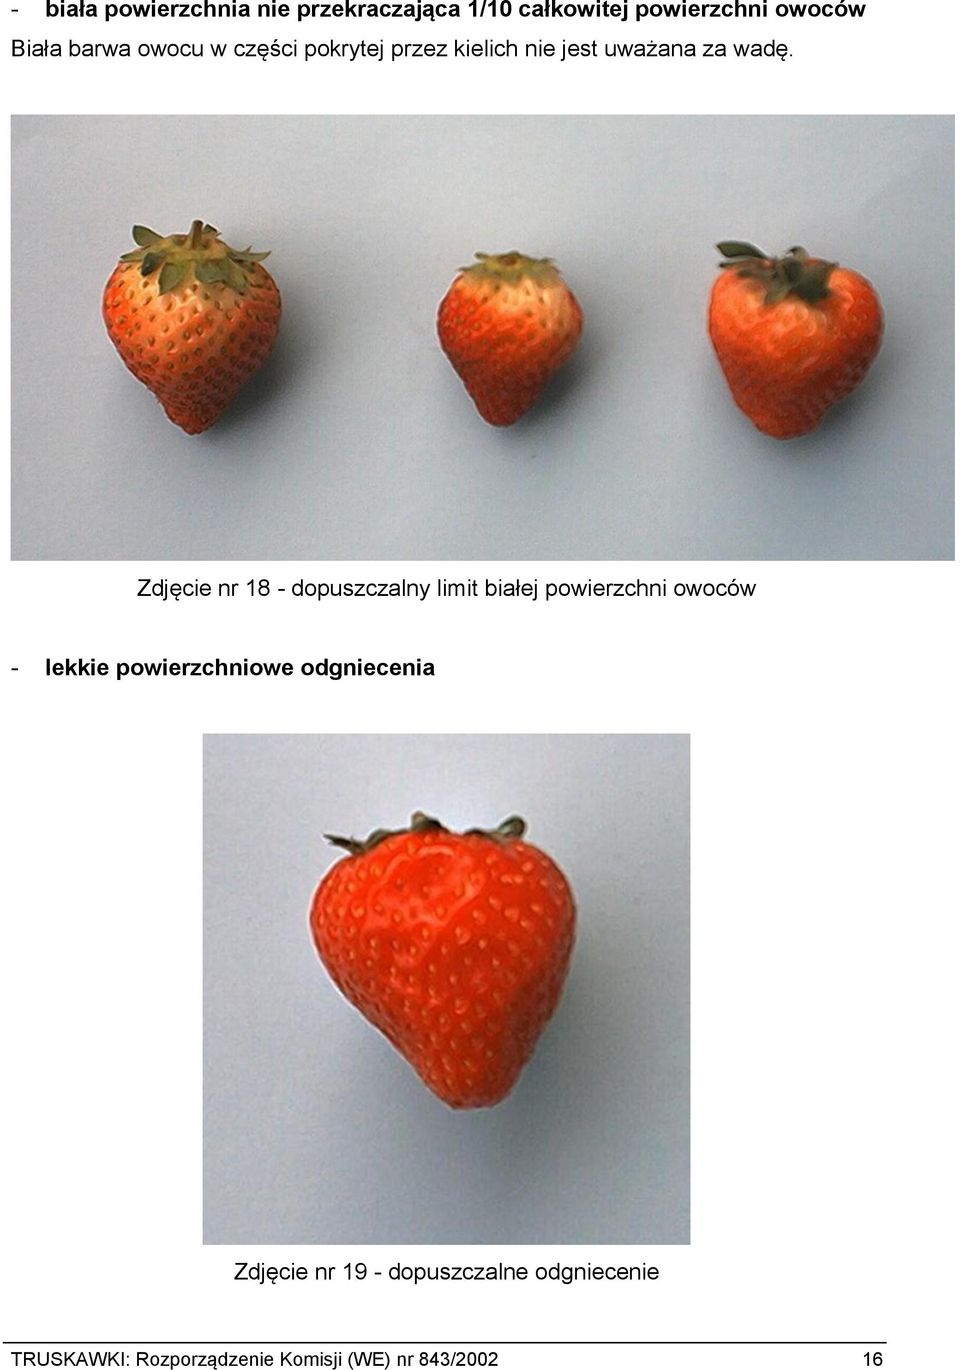 Zdjęcie nr 18 - dopuszczalny limit białej powierzchni owoców - lekkie powierzchniowe